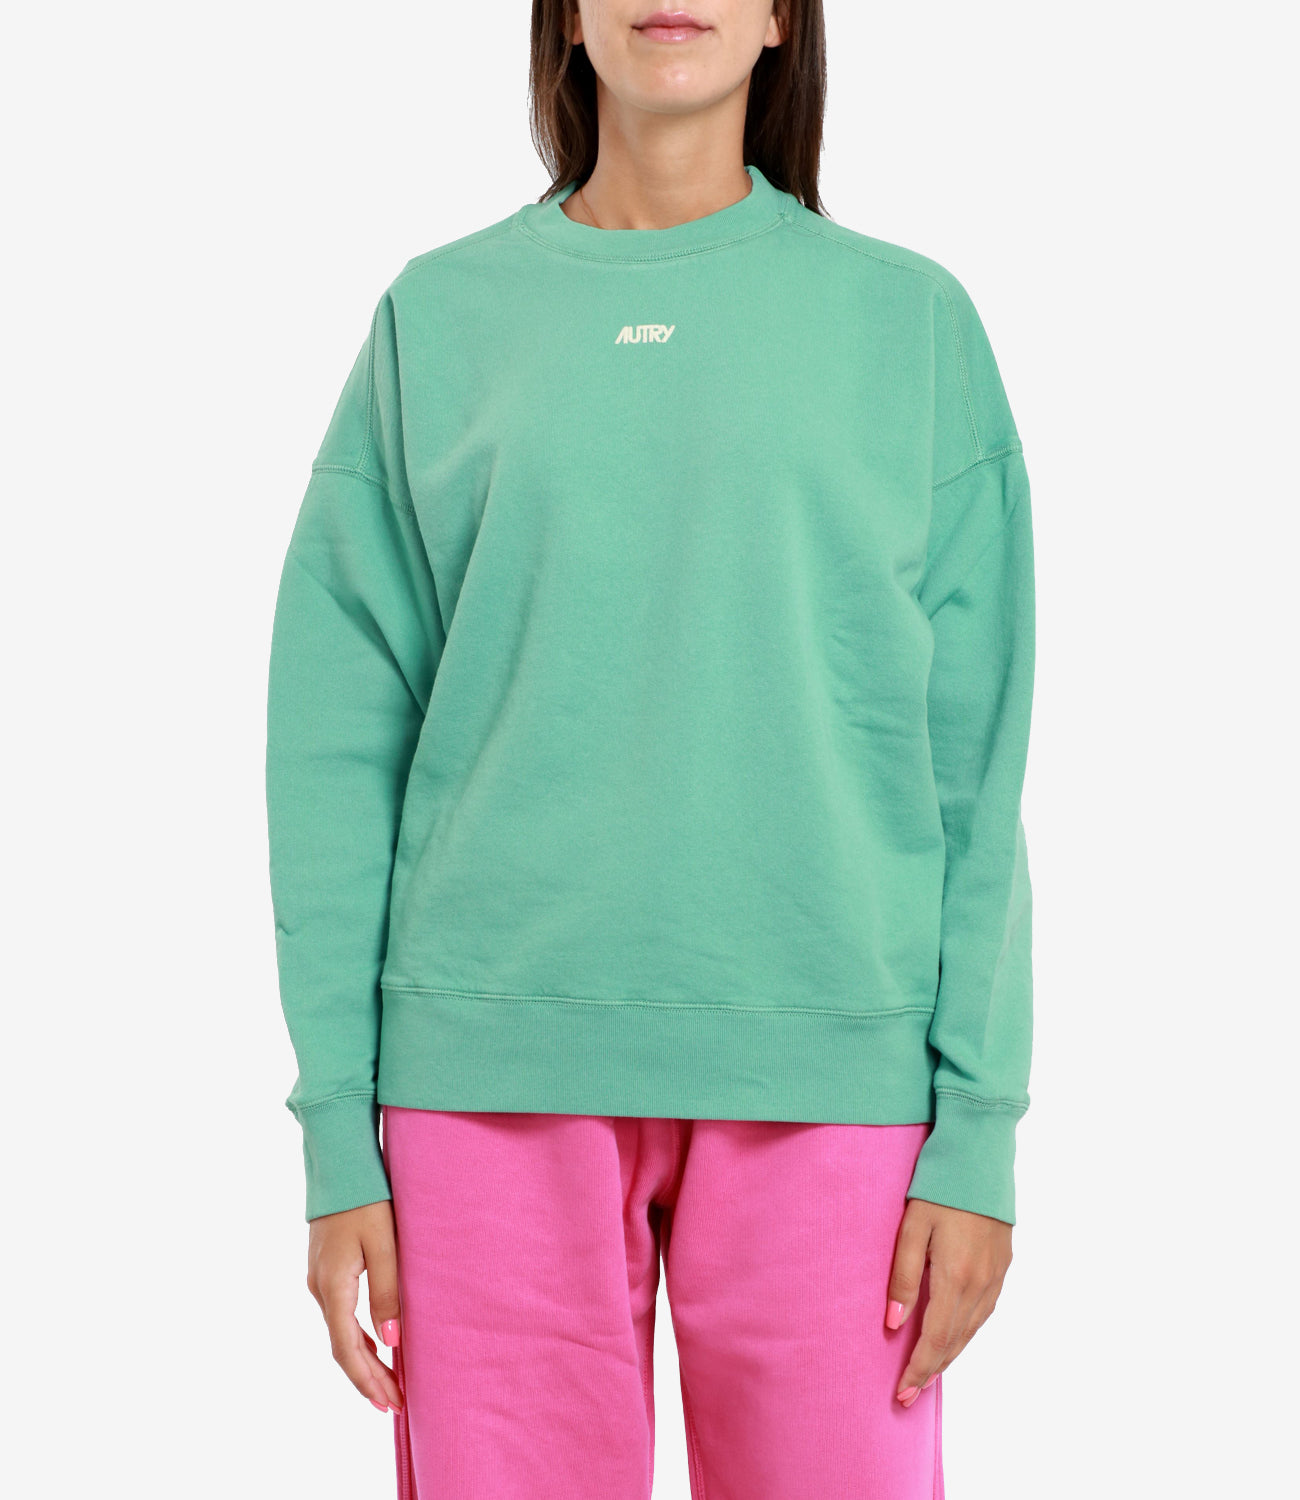 Autry | Sweatshirt Water Green